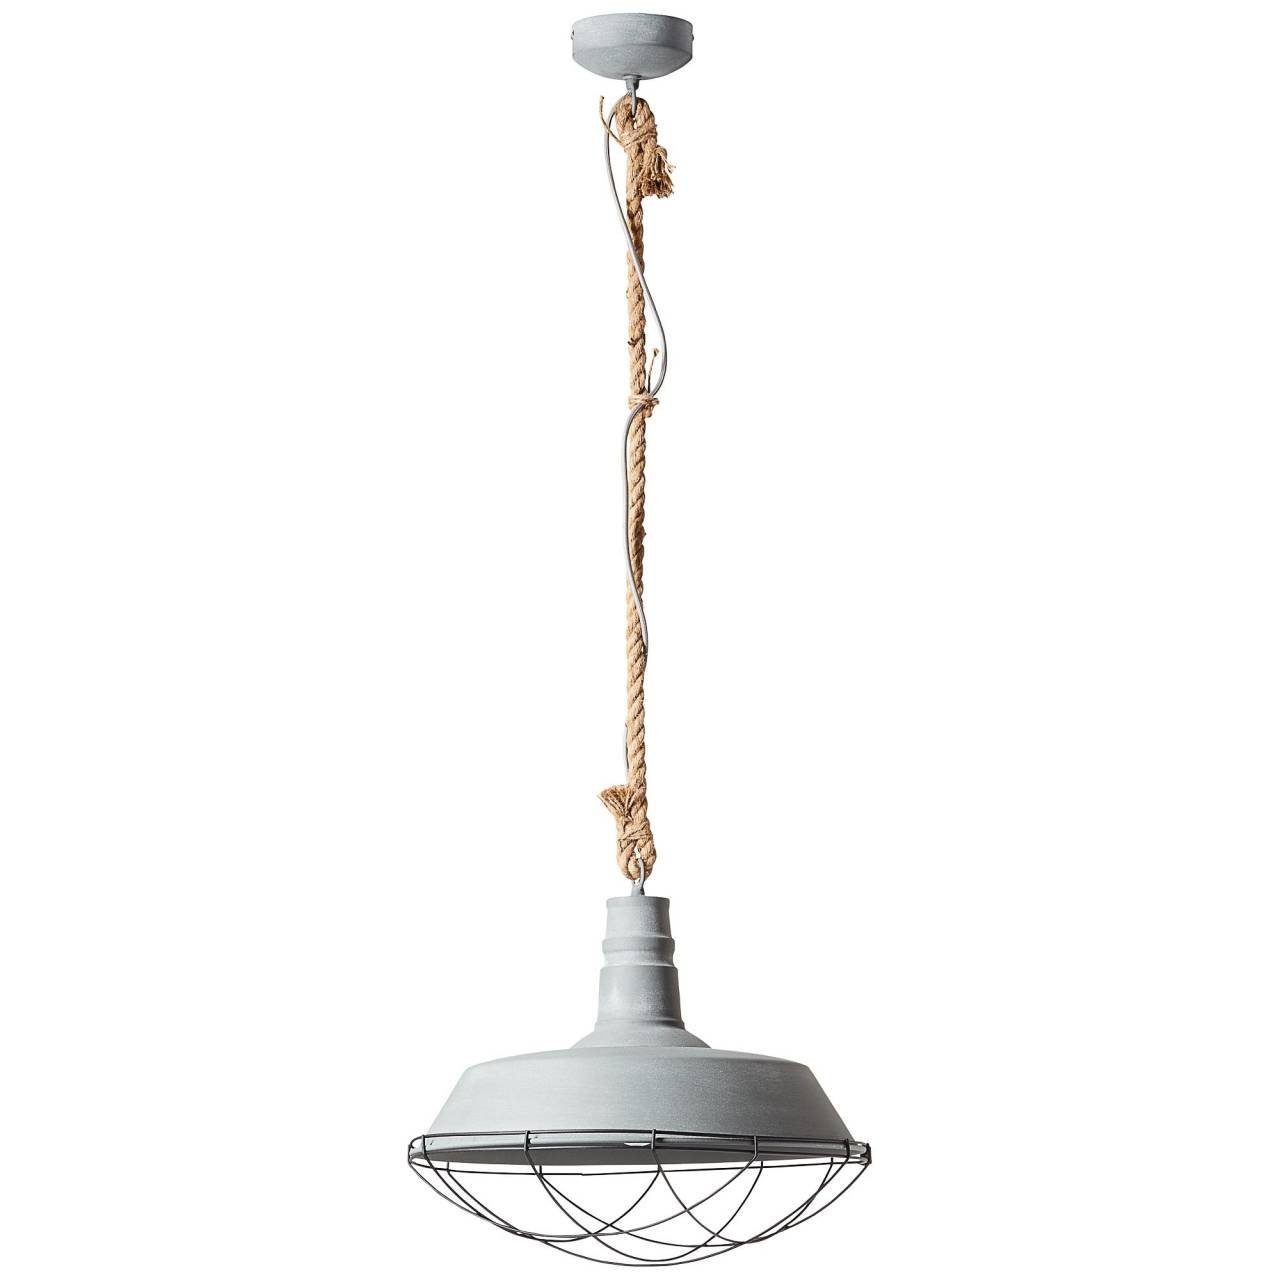 Pendelleuchte und Rope A60, grau Fabrikschick Rope, Brilliant Lampe Used-Look geeignet, zum Mit 47cm Beton VINTAGE Pendelleuchte 60W, 1x Industrial E27, -